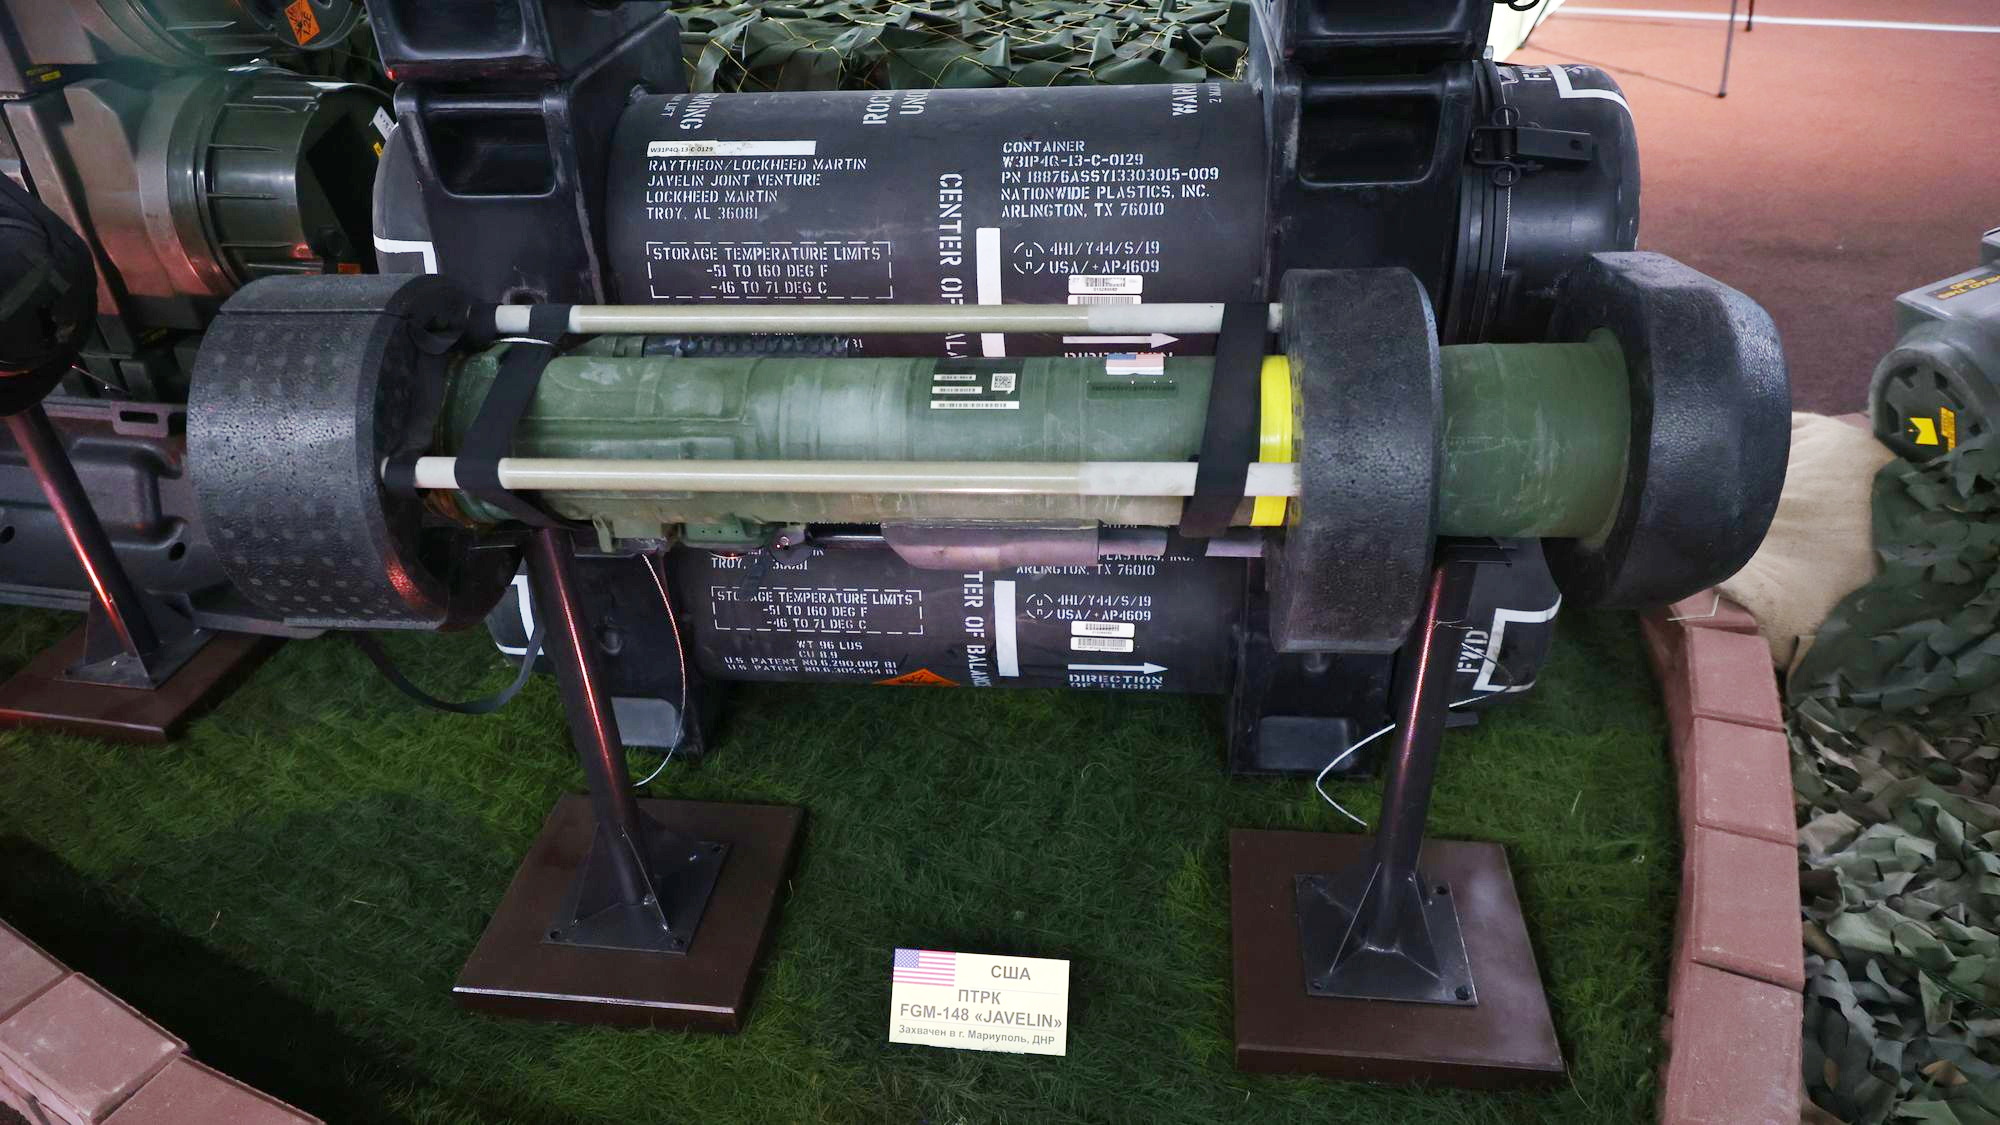 FGM-148 Javelin ракетное оружие США. Эстония направит одного военного